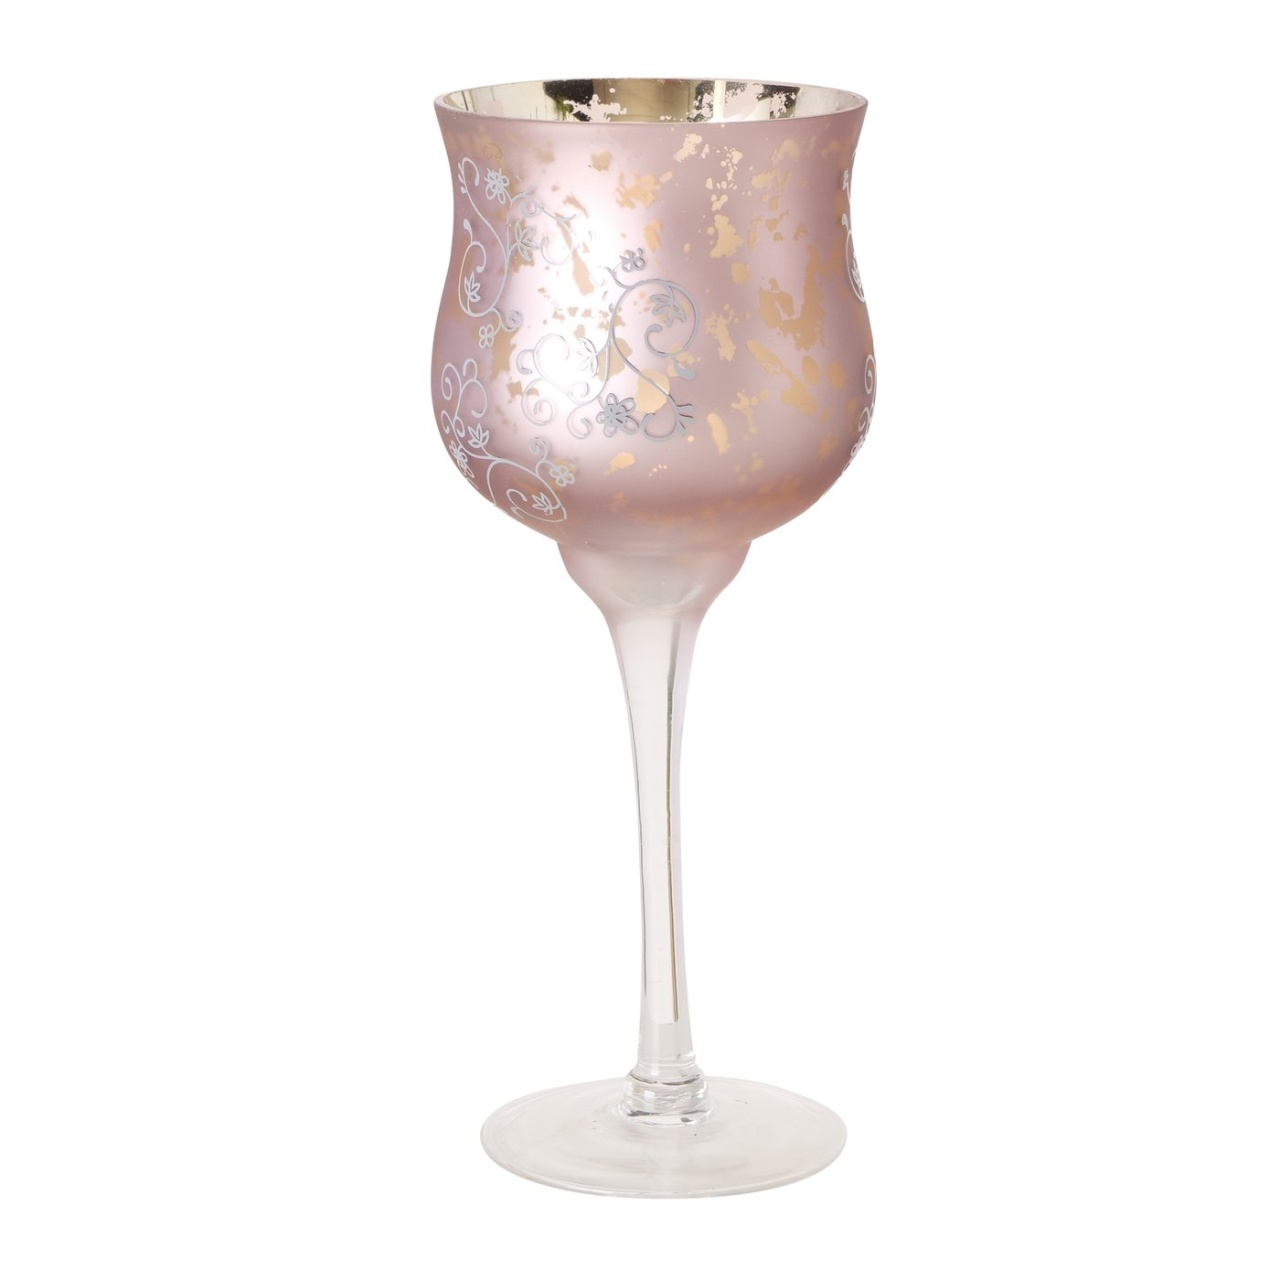 Windlicht Kelch Manou, Glas, dunkelrosa, H 30 cm